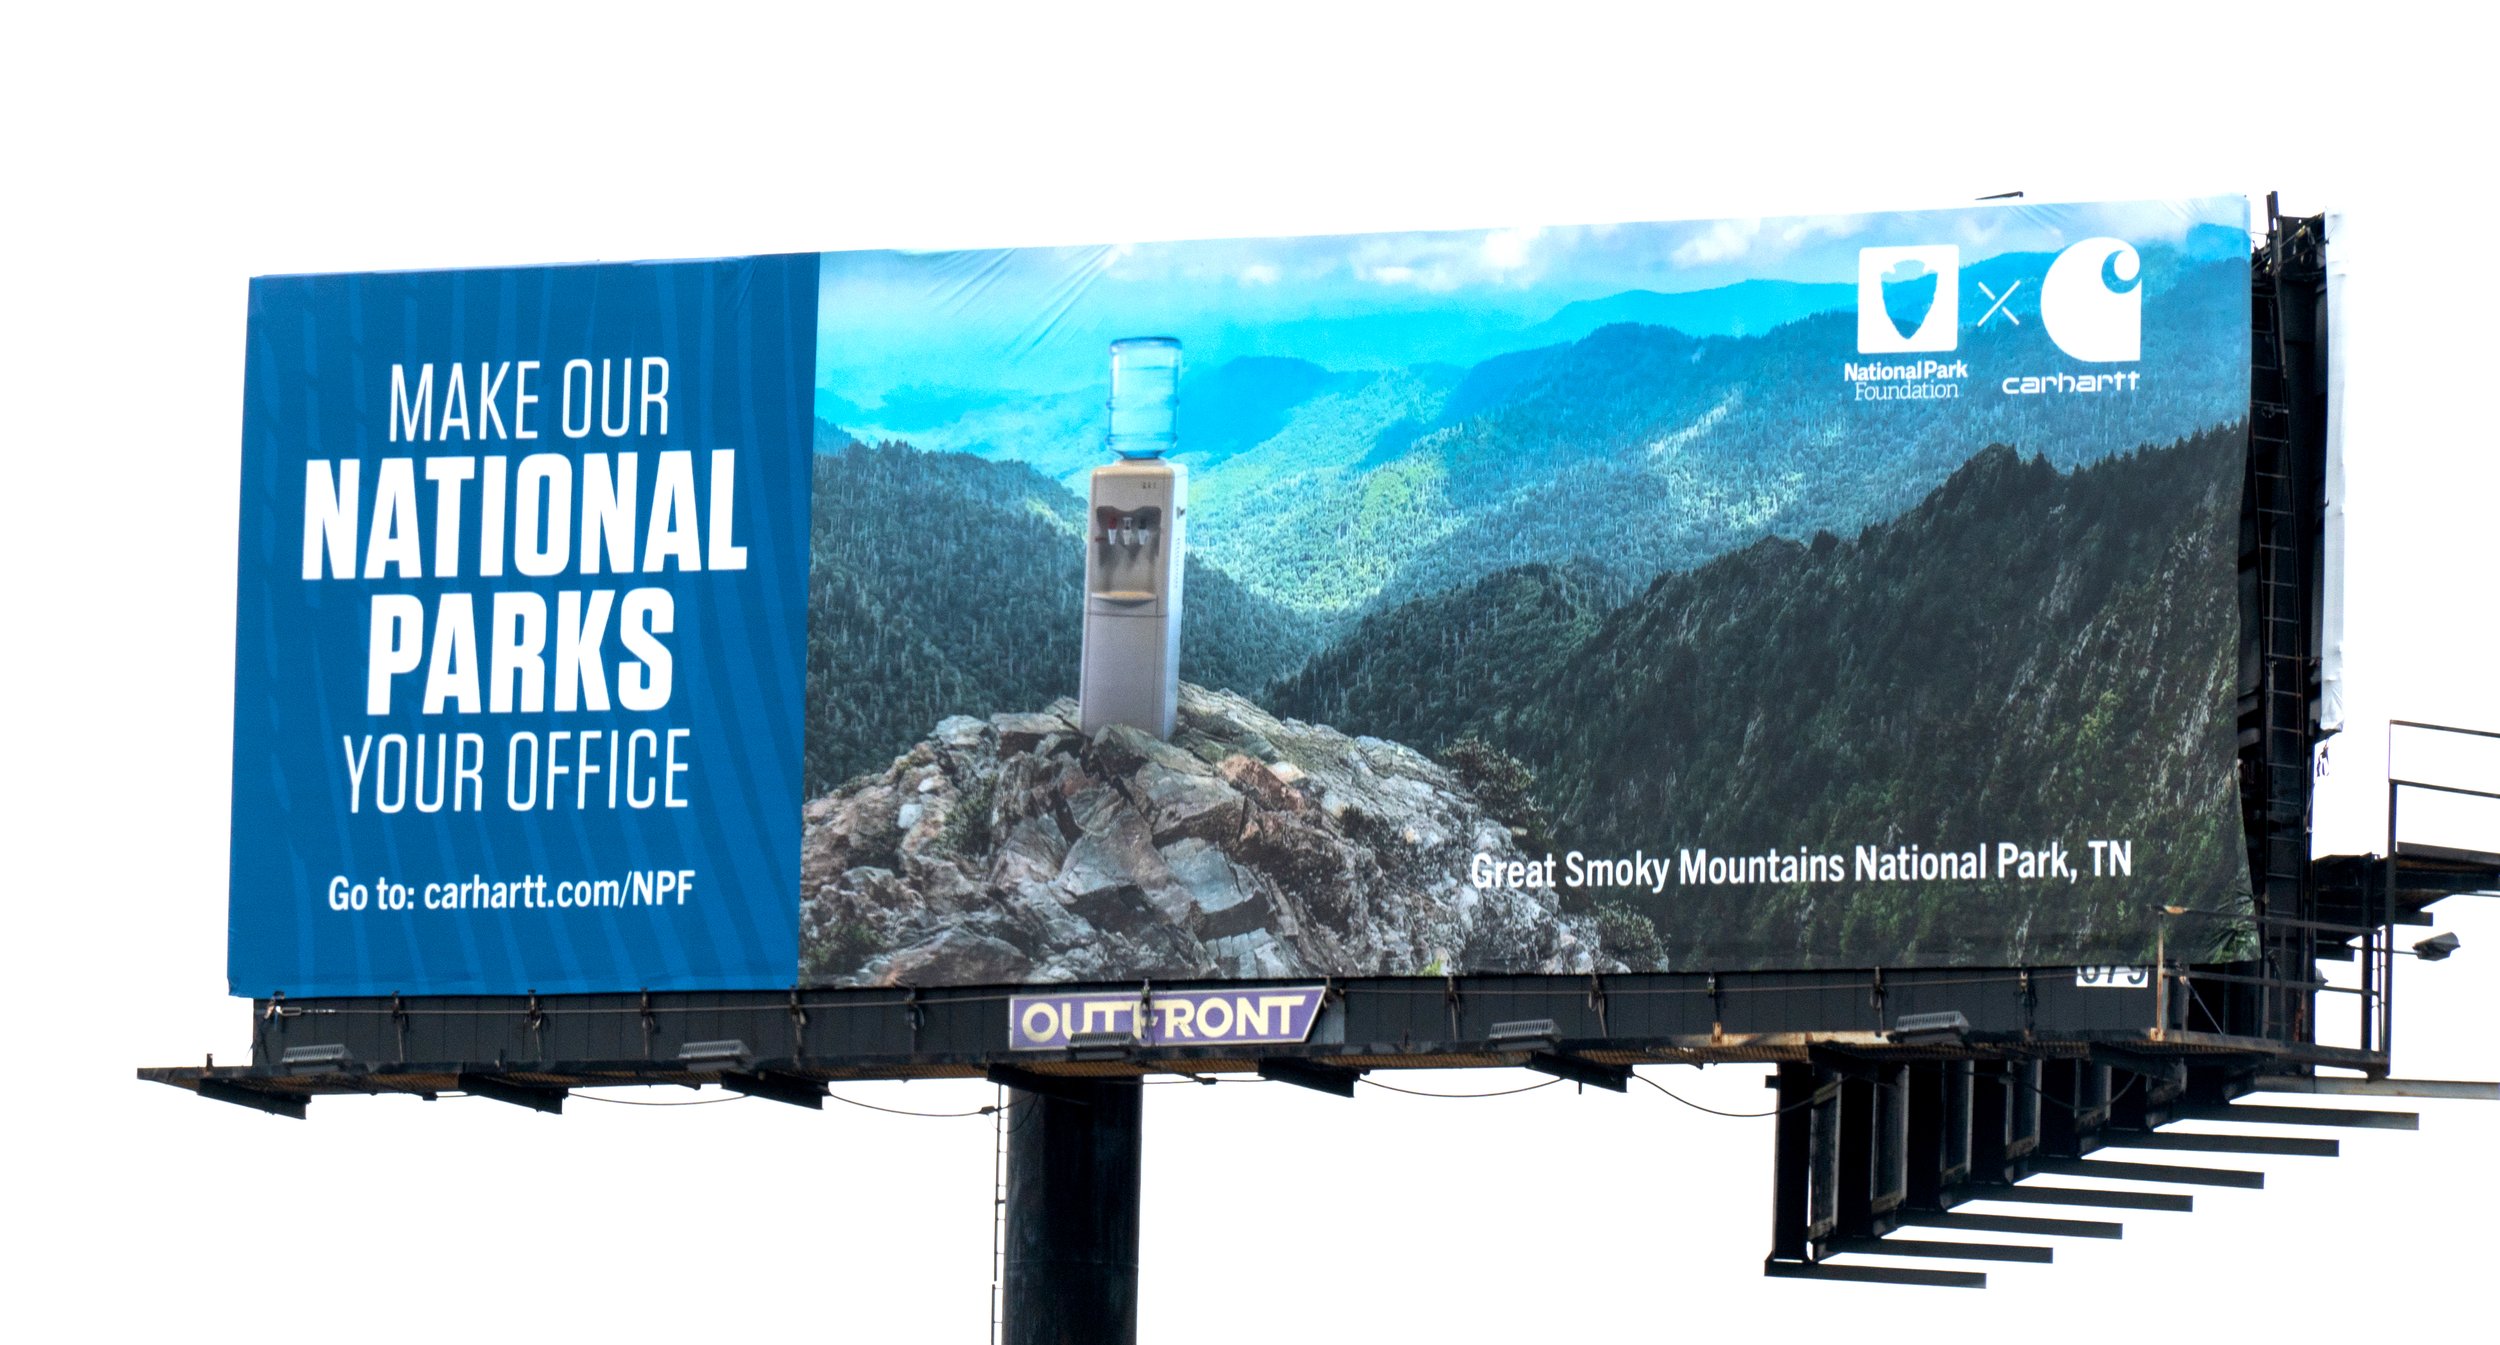 Carhartt National Parks Billboard Advertising Project X PJX Media+3.jpg